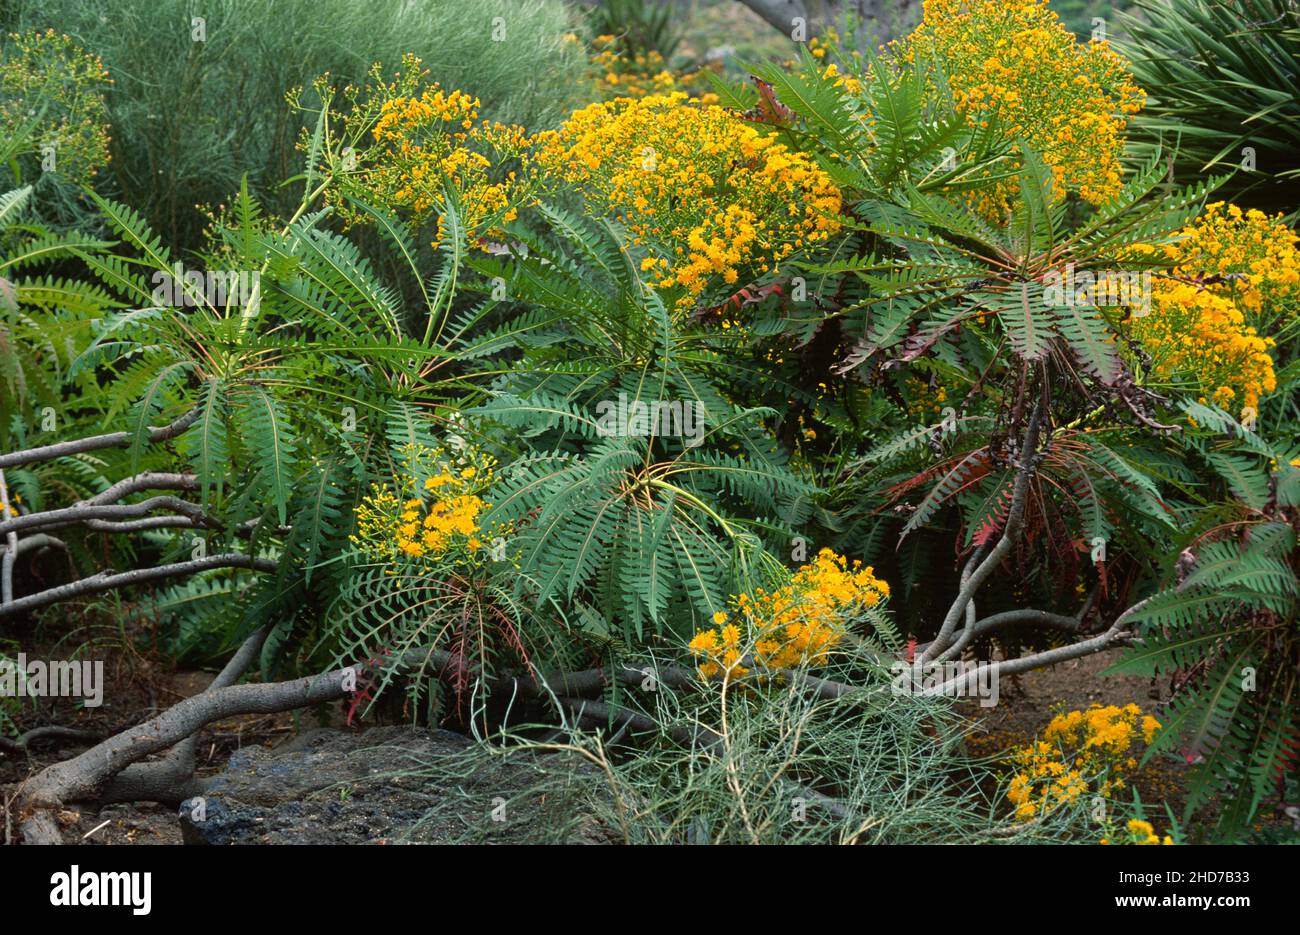 La pipa (Sonchus congestus) es un arbusto endémico de Gran Canaria y Tenerife, Islas Canarias, España. Foto de stock